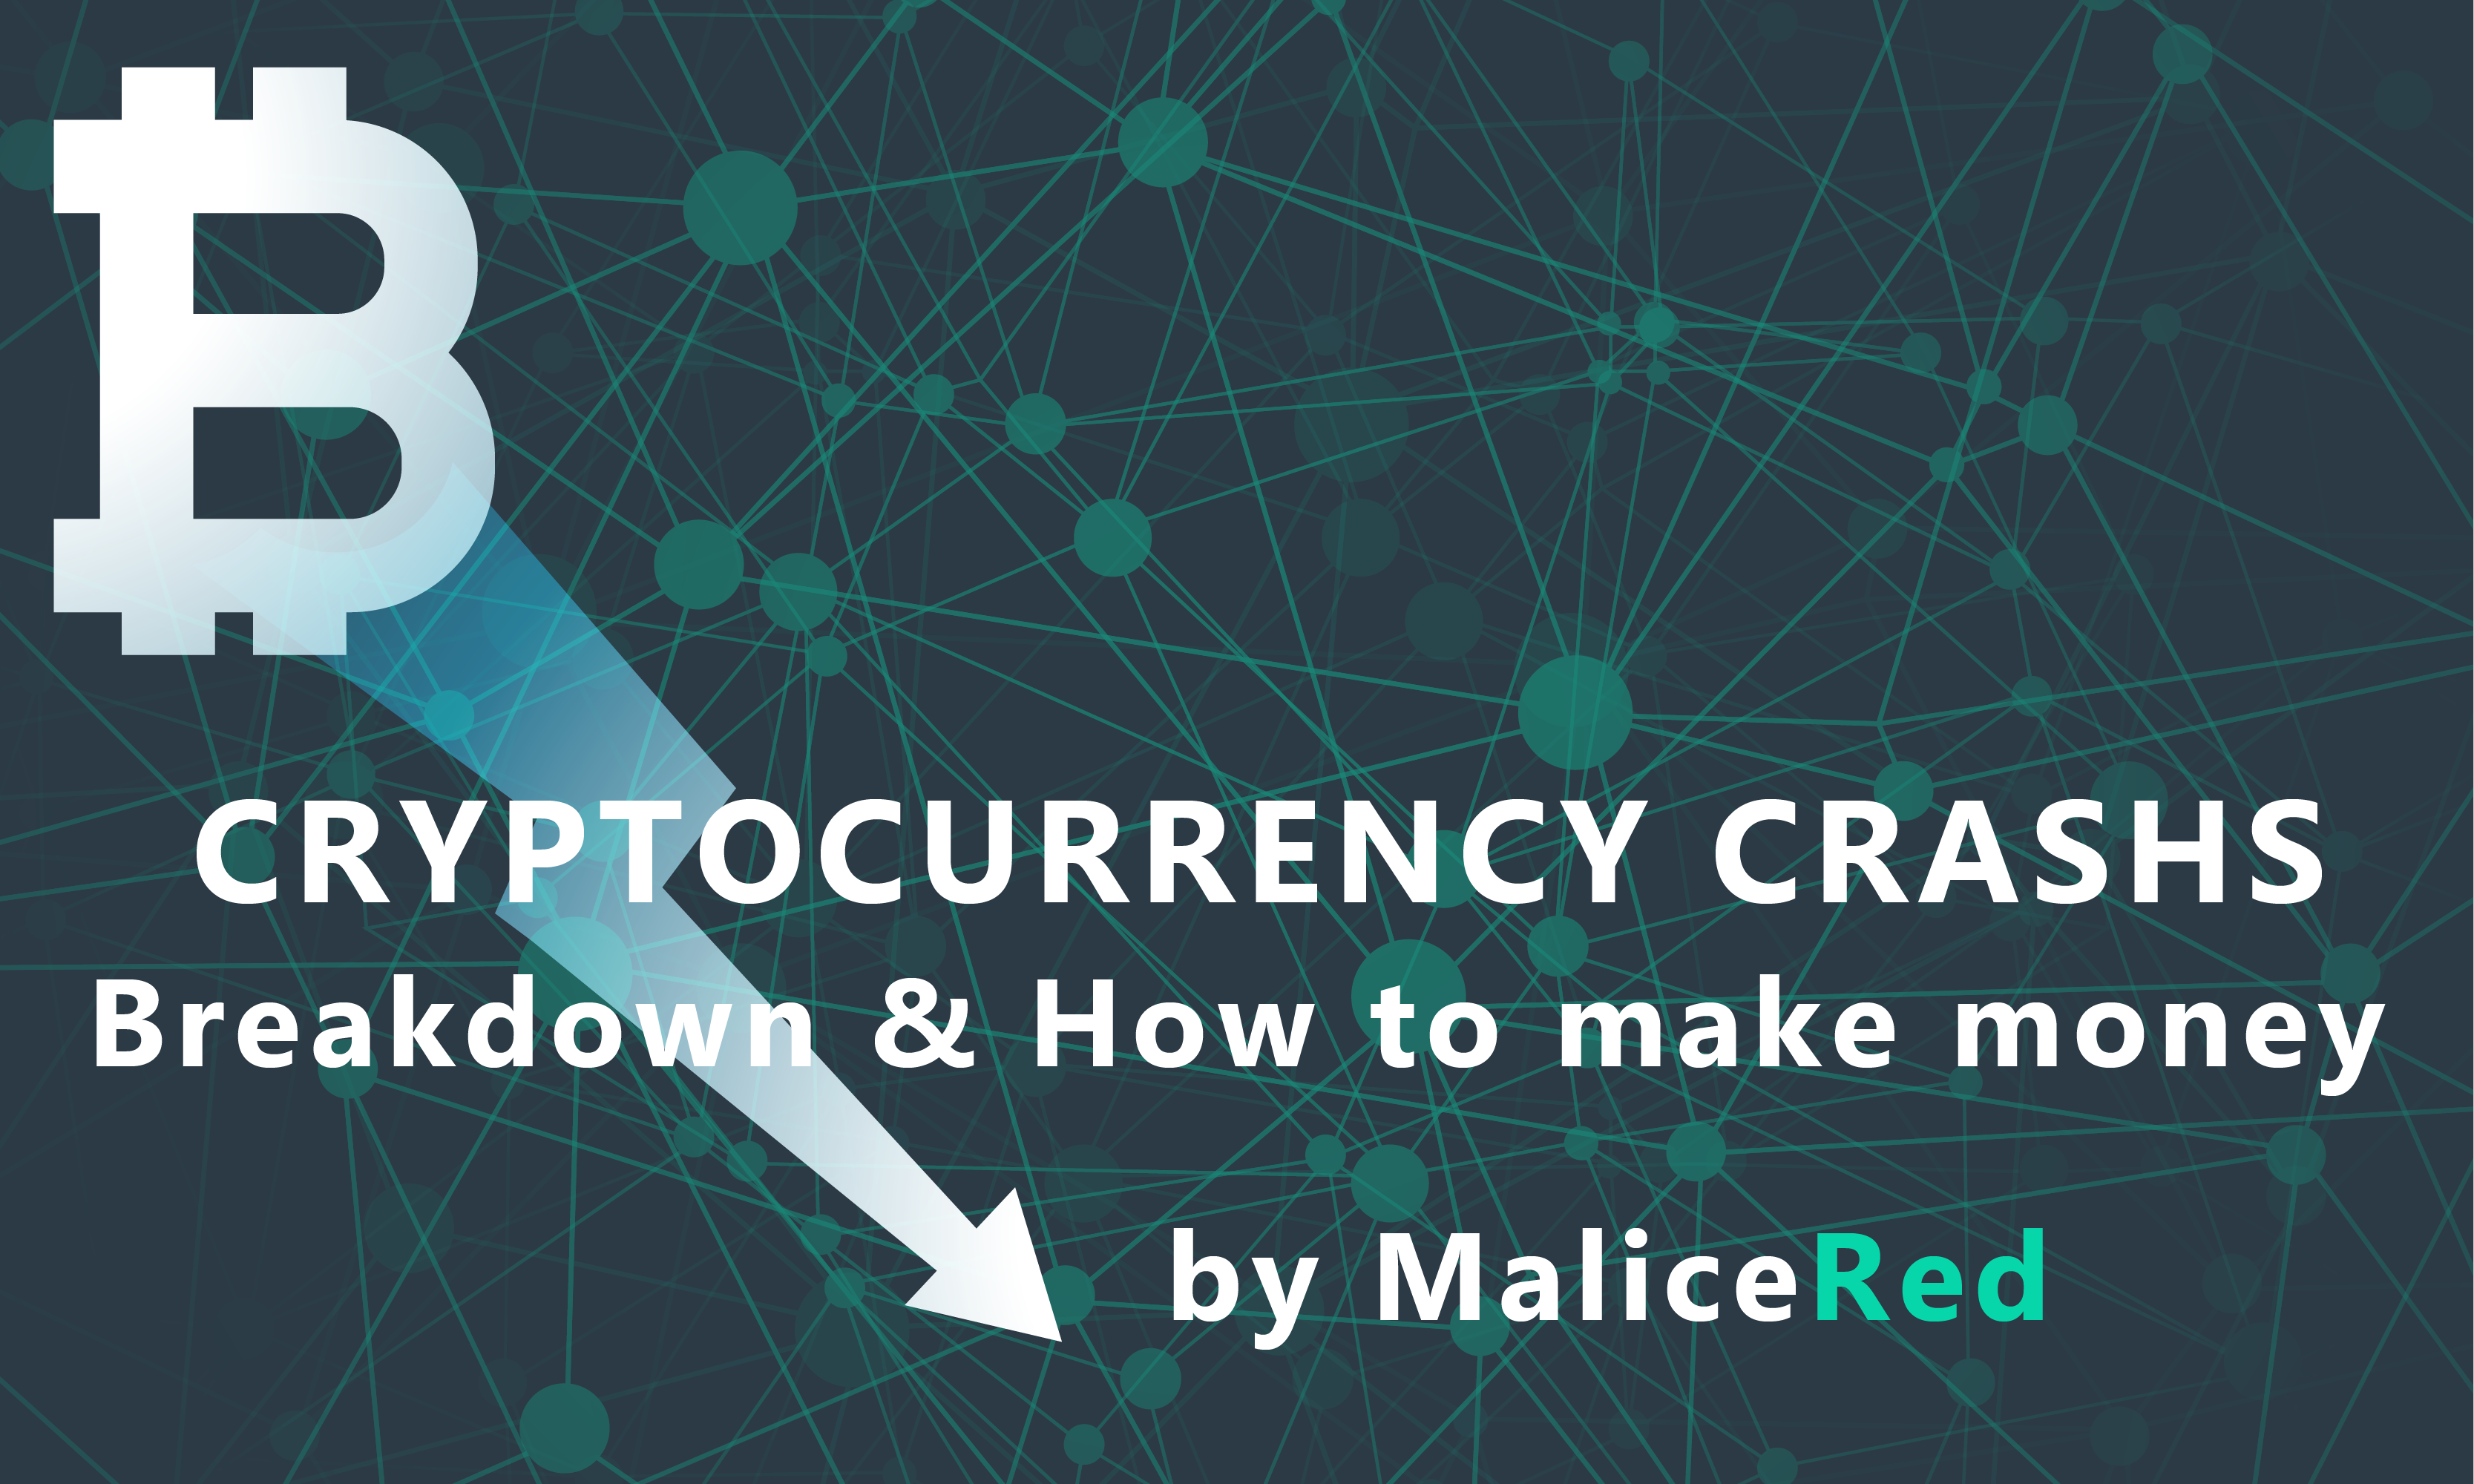 Make money when bitcoin crashes